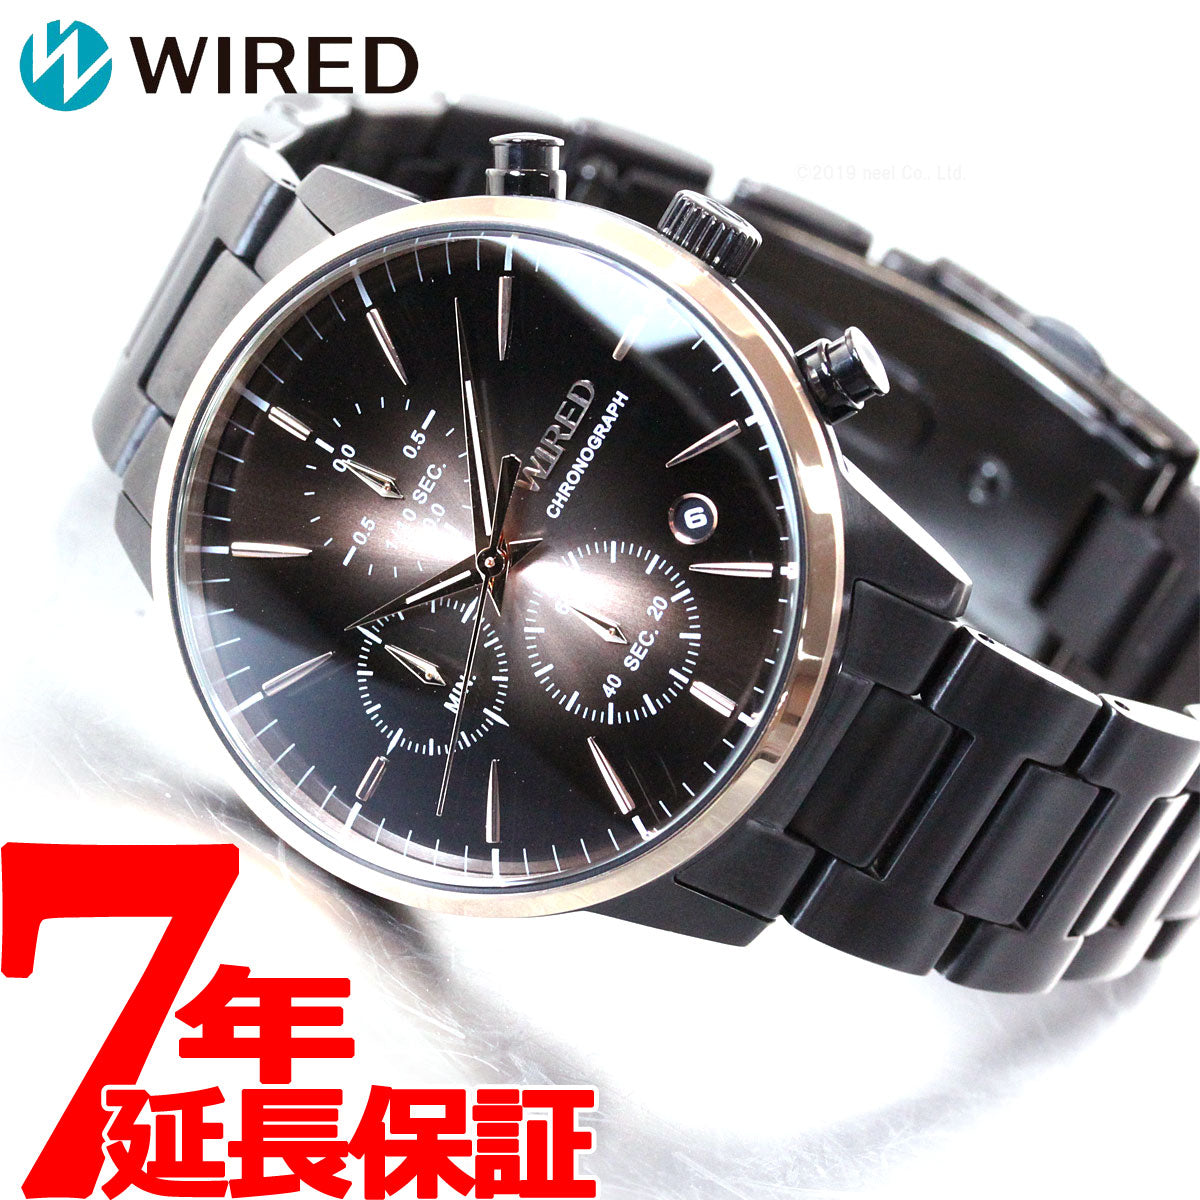 セイコー ワイアード メンズノンノ WEB掲載 neel限定モデル SEIKO WIRED 腕時計 メンズ TOKYO SORA AGAT738